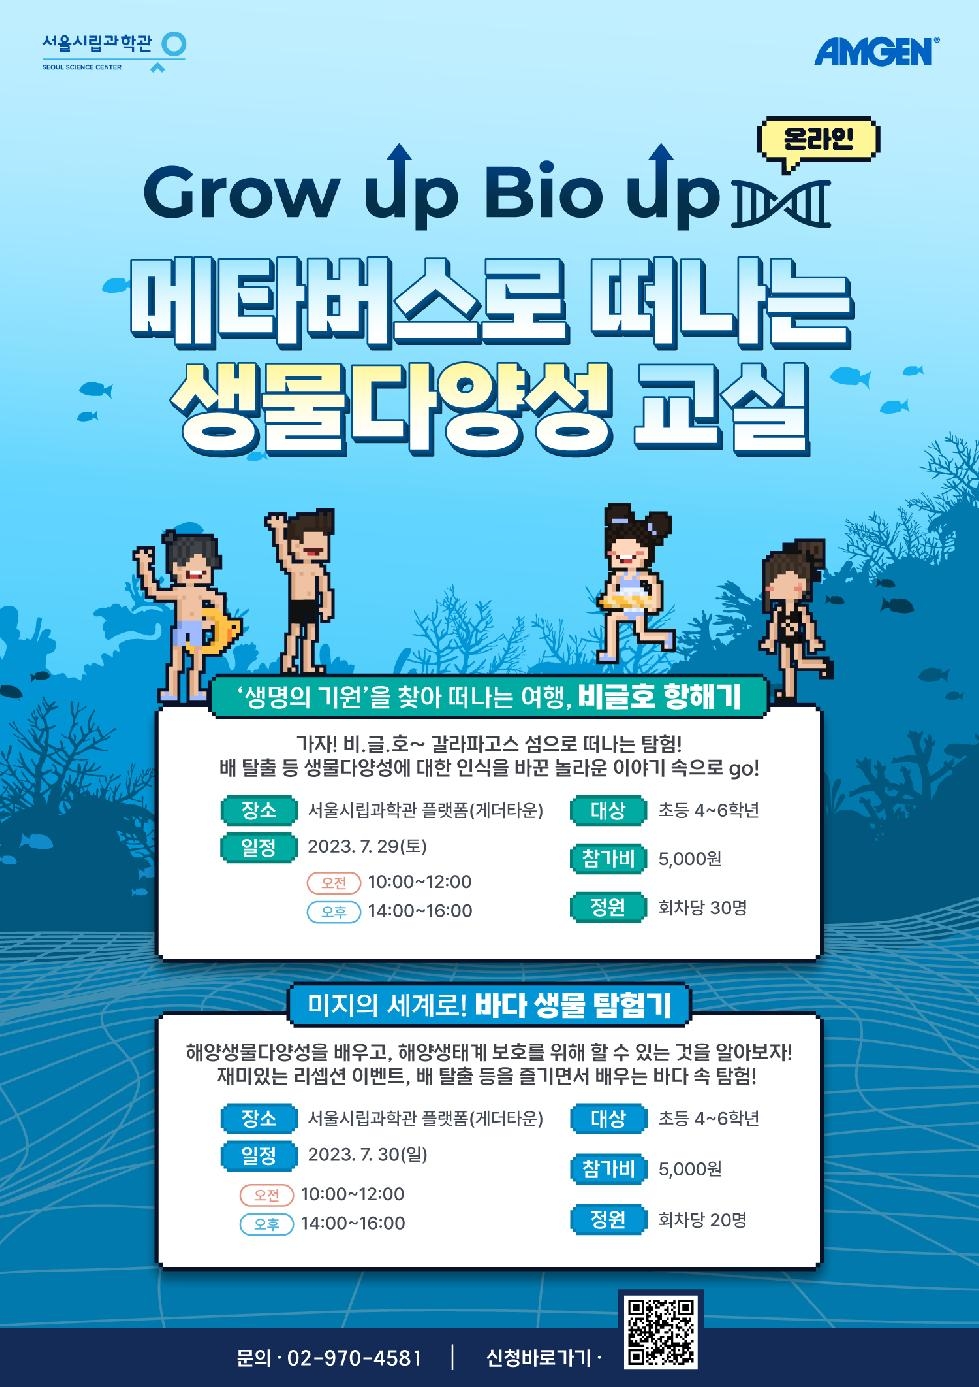 서울시, 체험형 생명과학교육 `그로우 업, 바이오 업`…7.10(월)부터 접수